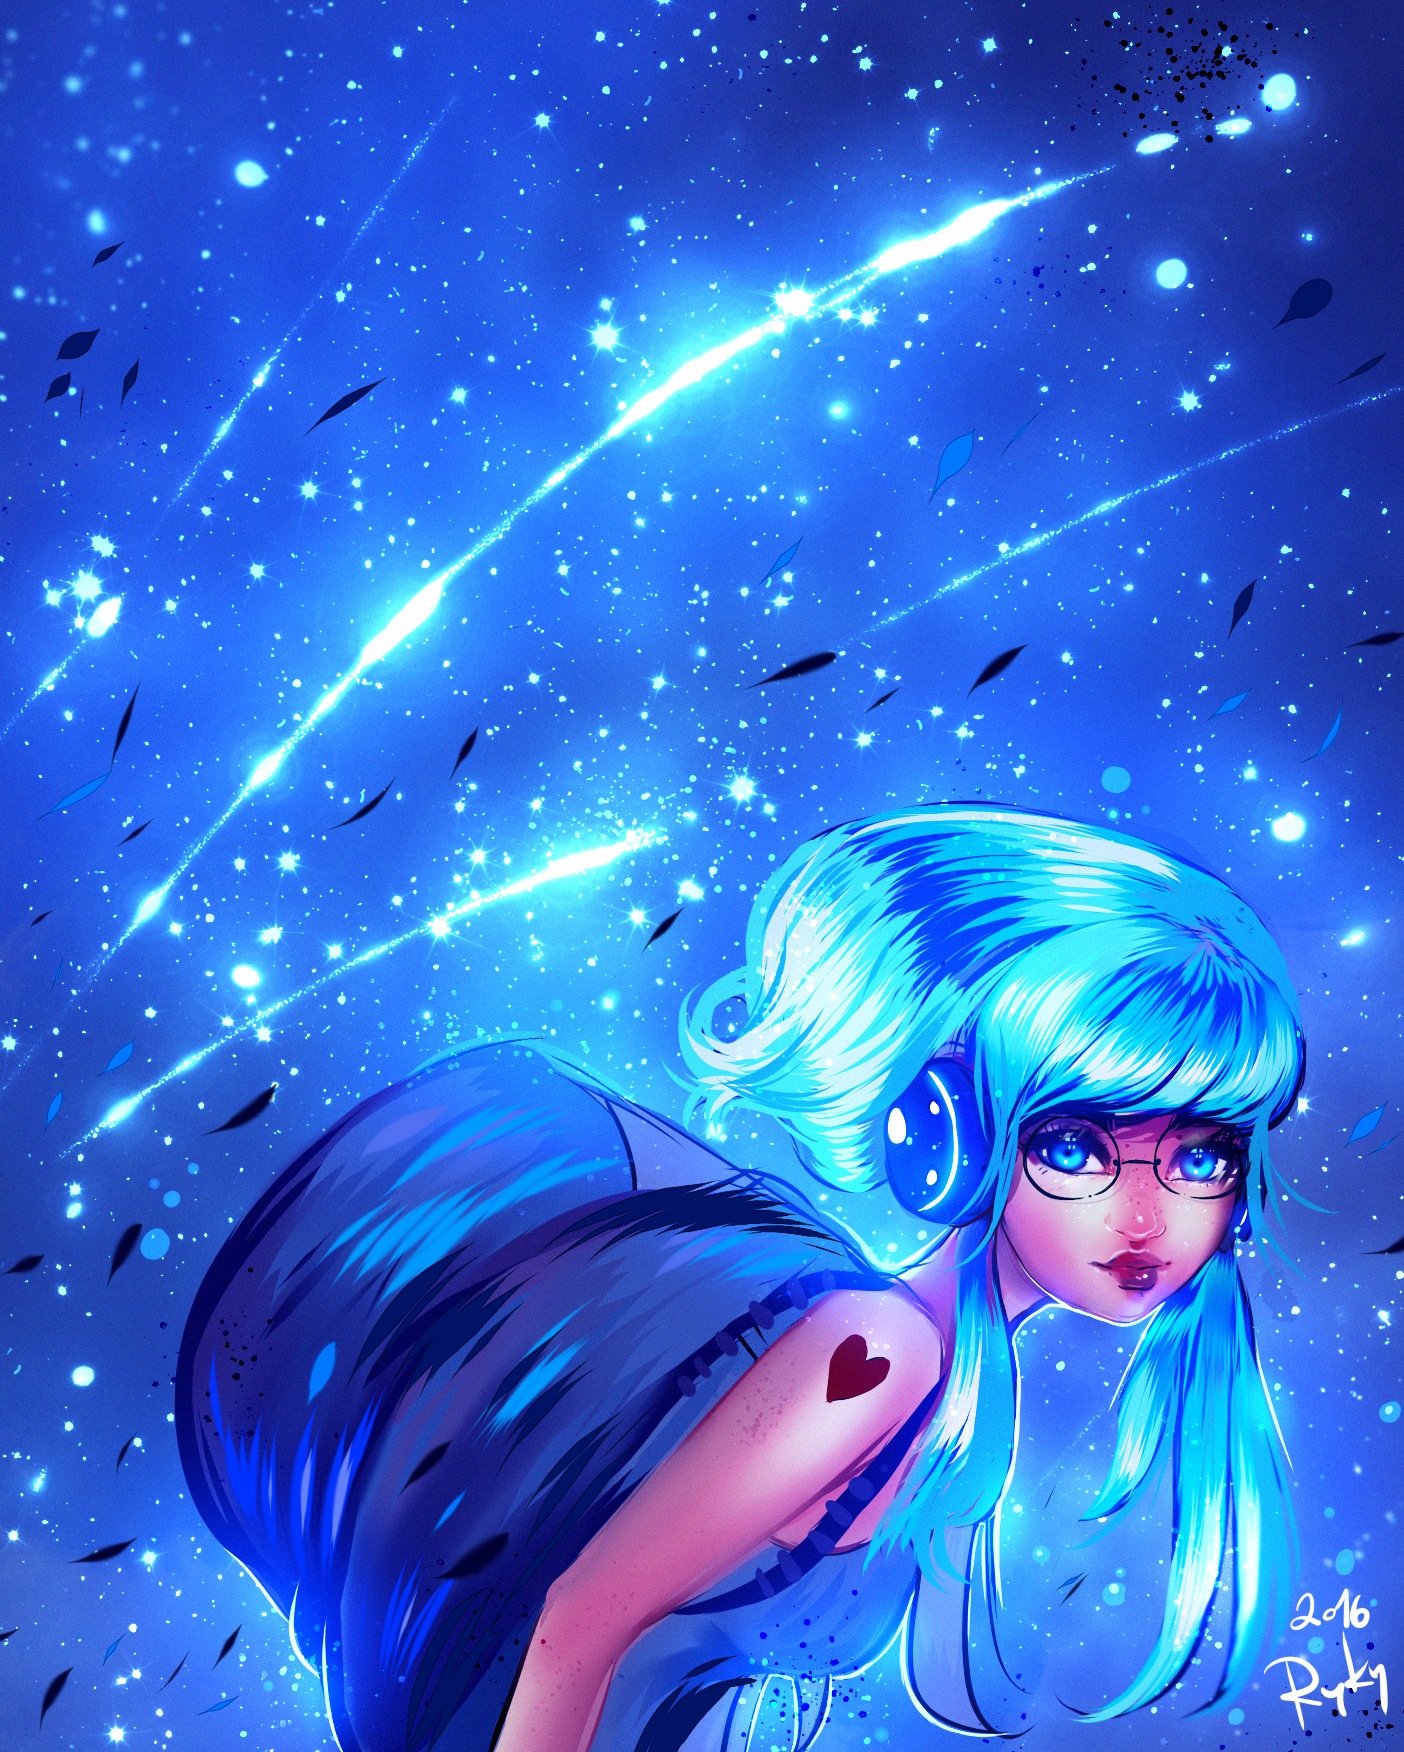 Фото Девушка с голубыми волосами и глазами, в очках и светящихся наушниках, с рюкзаком за спиной и тату-сердечком на плече, на фоне звездопада, by ryky